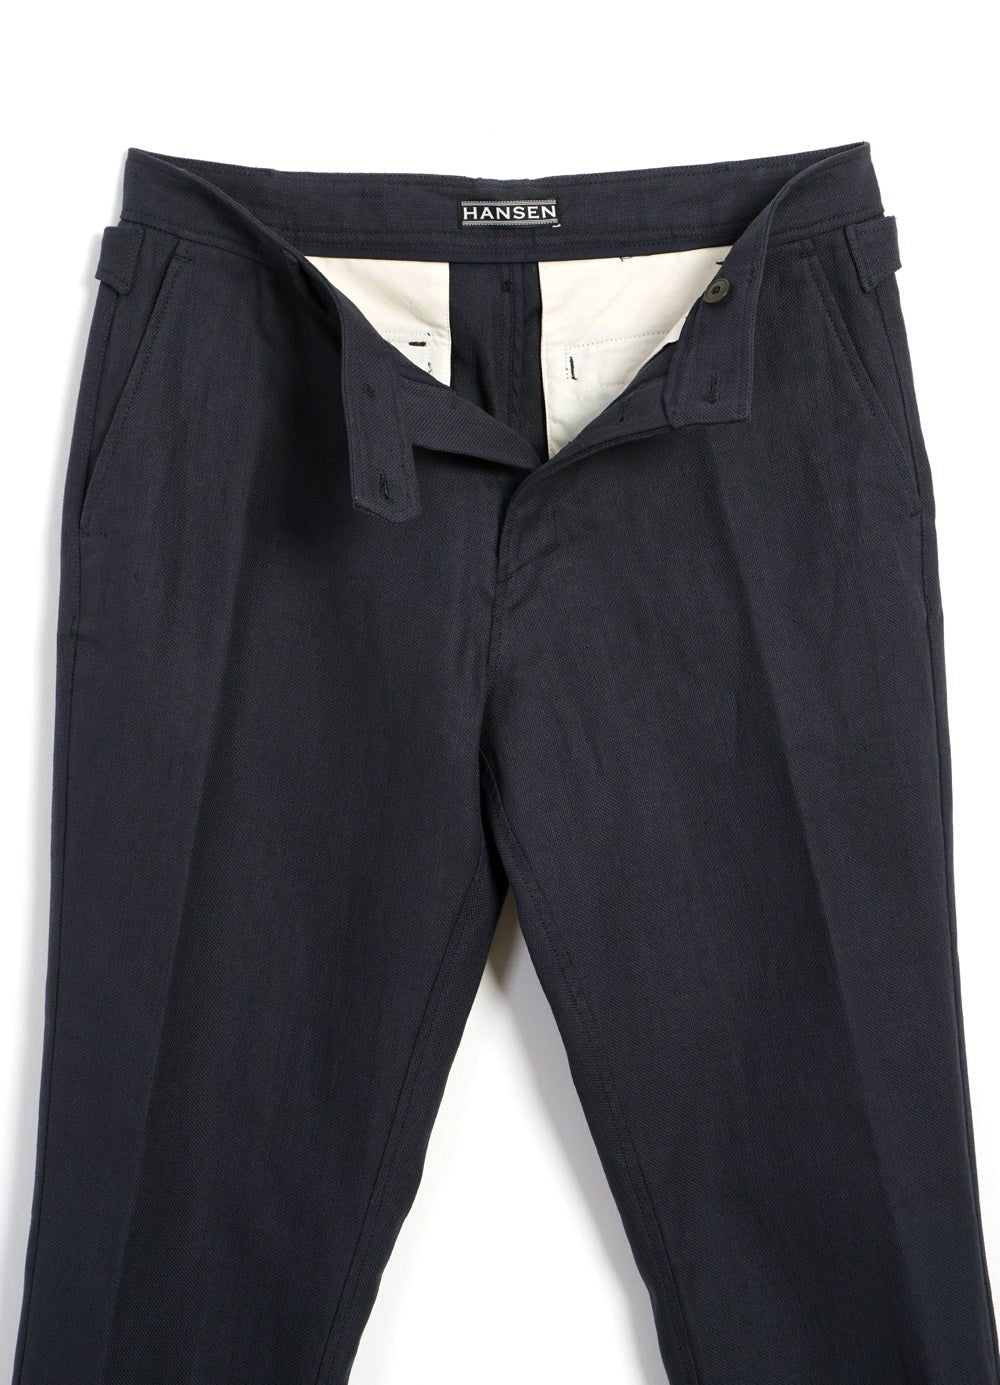 HANSEN GARMENTS - FINN | Side Buckle Regular Trousers | Dark Blue - HANSEN Garments